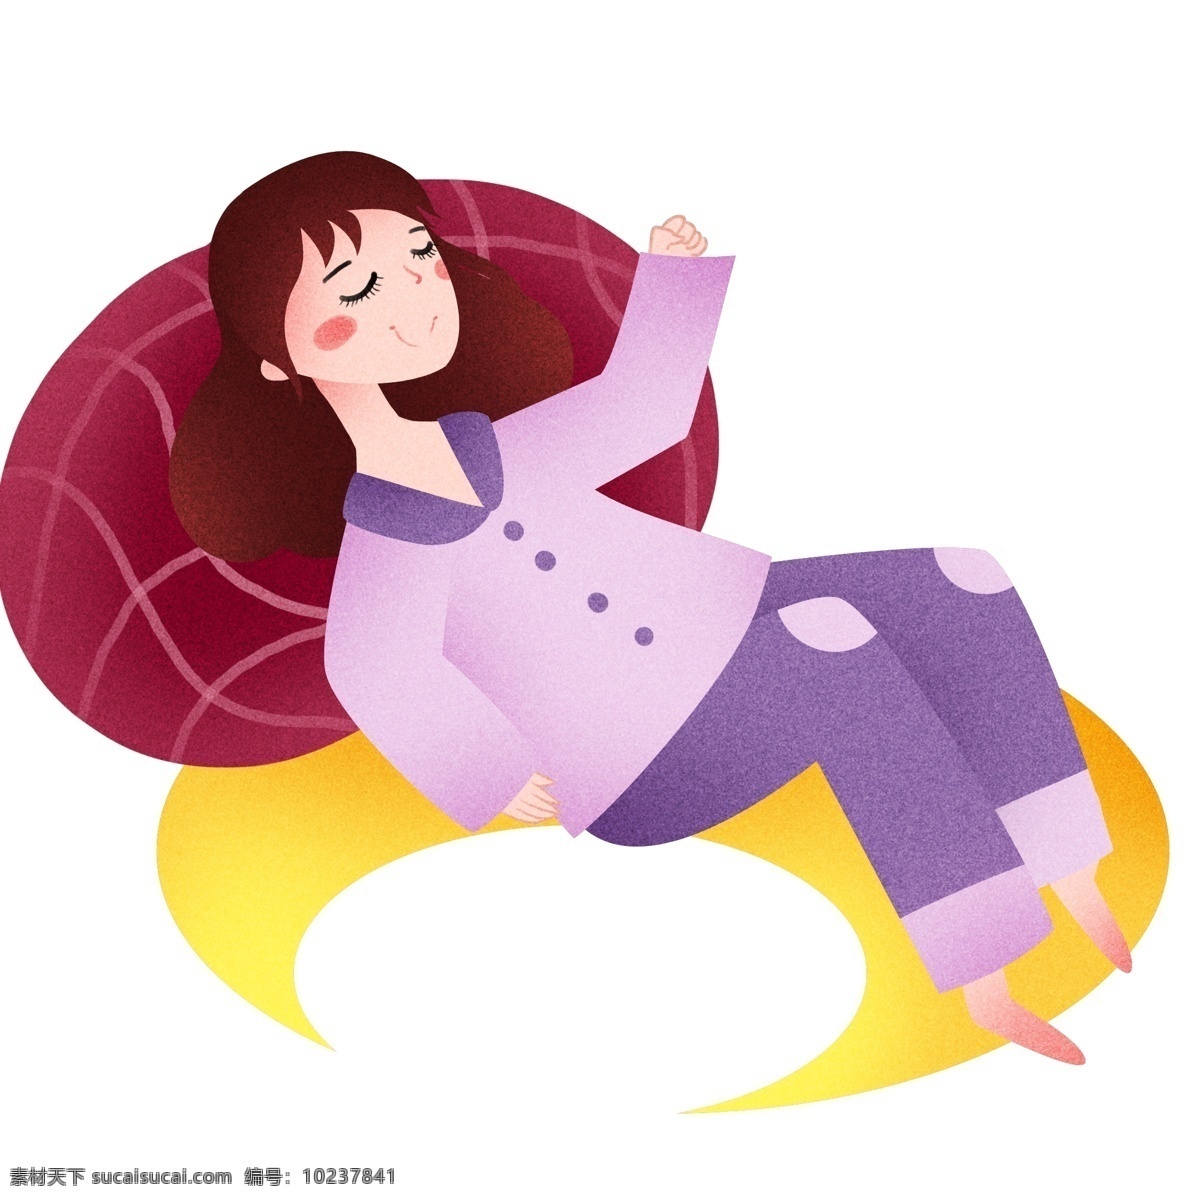 月亮 上 睡觉 女孩 世界 睡眠 日 插画 在月亮上睡觉 黄色的月亮 红色的枕头 睡觉的女孩 卡通人物